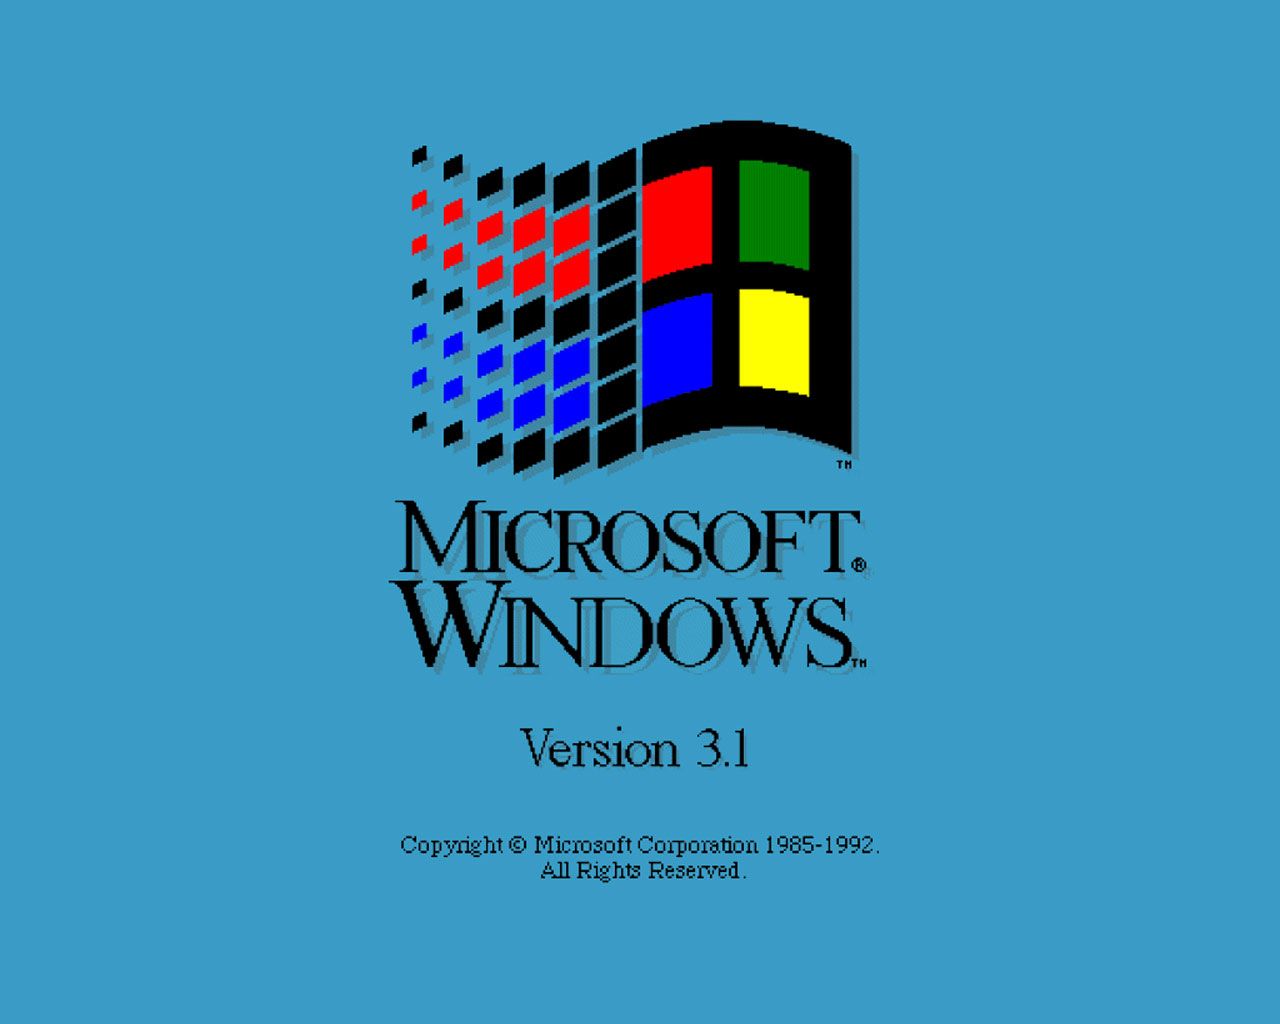 Windows 10 Wallpaper 1280x1024 , HD Wallpaper & Backgrounds